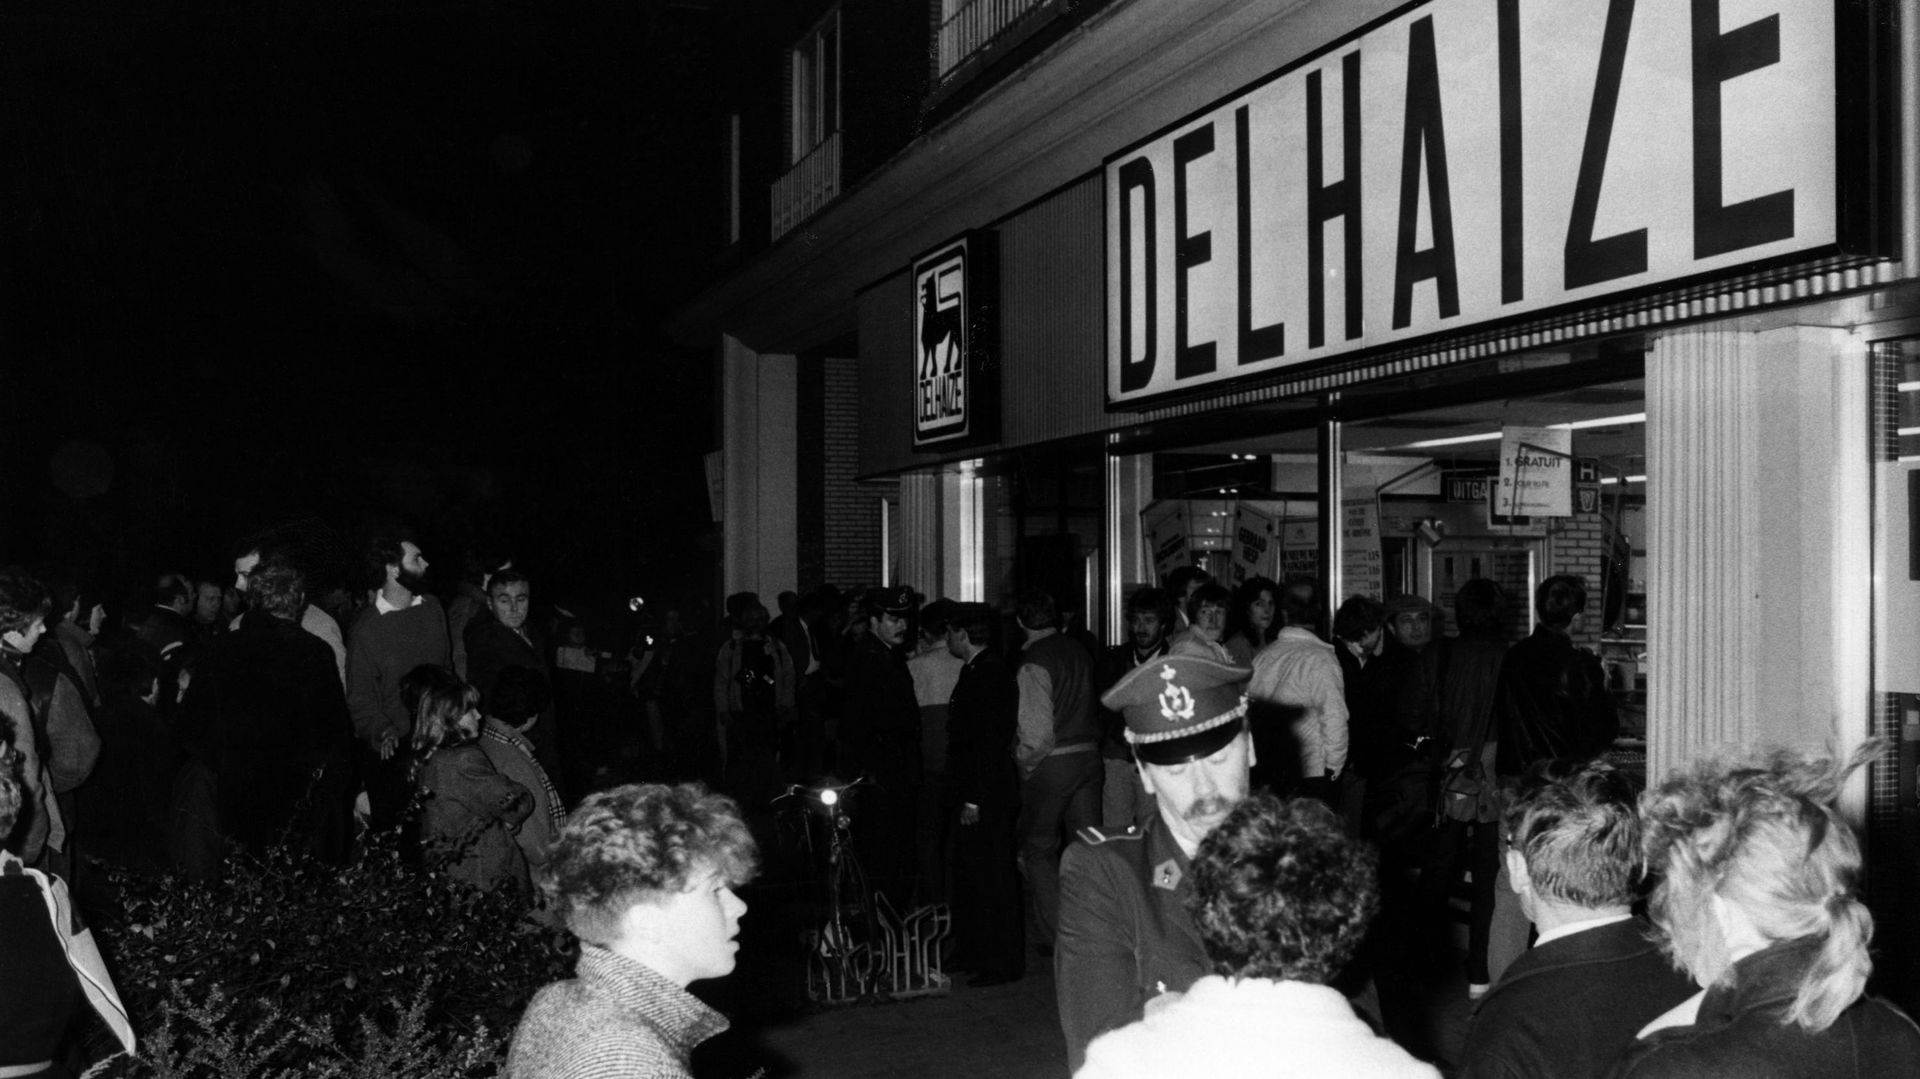 Le mot 'Delhaize' a aussi beaucoup fait parler de lui dans les années 80 en Belgique avec la tristement célèbre affaire des braquages sanglants de plusieurs magasins commis par ceux qu’on a appelé les Tueurs du Brabant